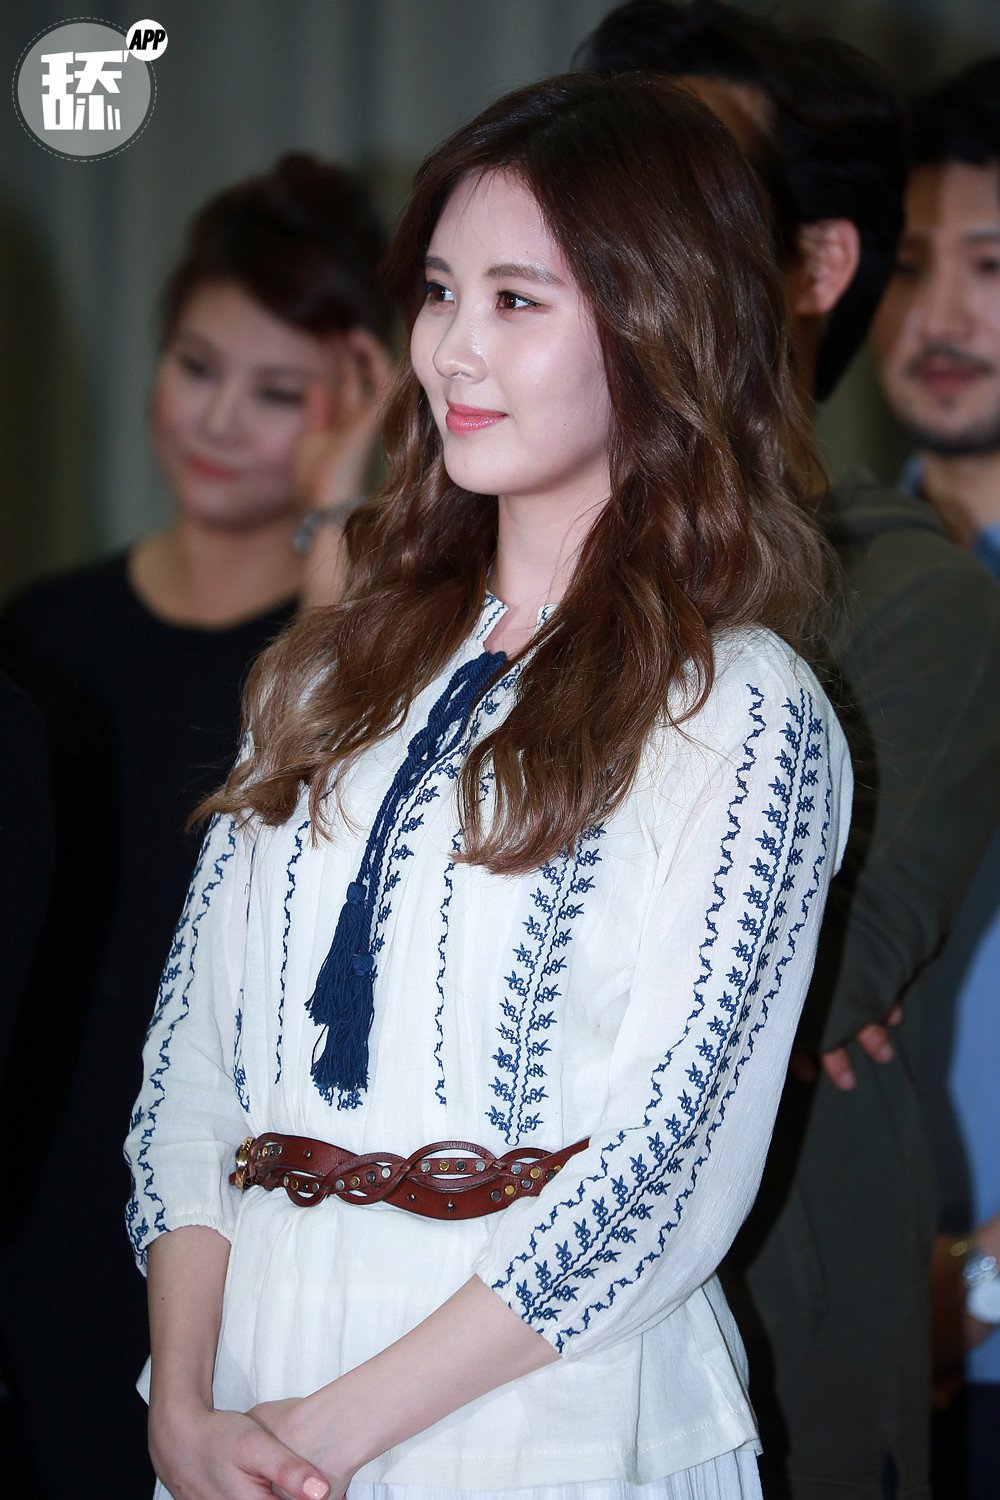 [OTHER][08-12-2015]SeoHyun tham dự vở nhạc kịch mới mang tên "Mamma Mia!" - Page 2 4Fn8V9qlcn-3000x3000